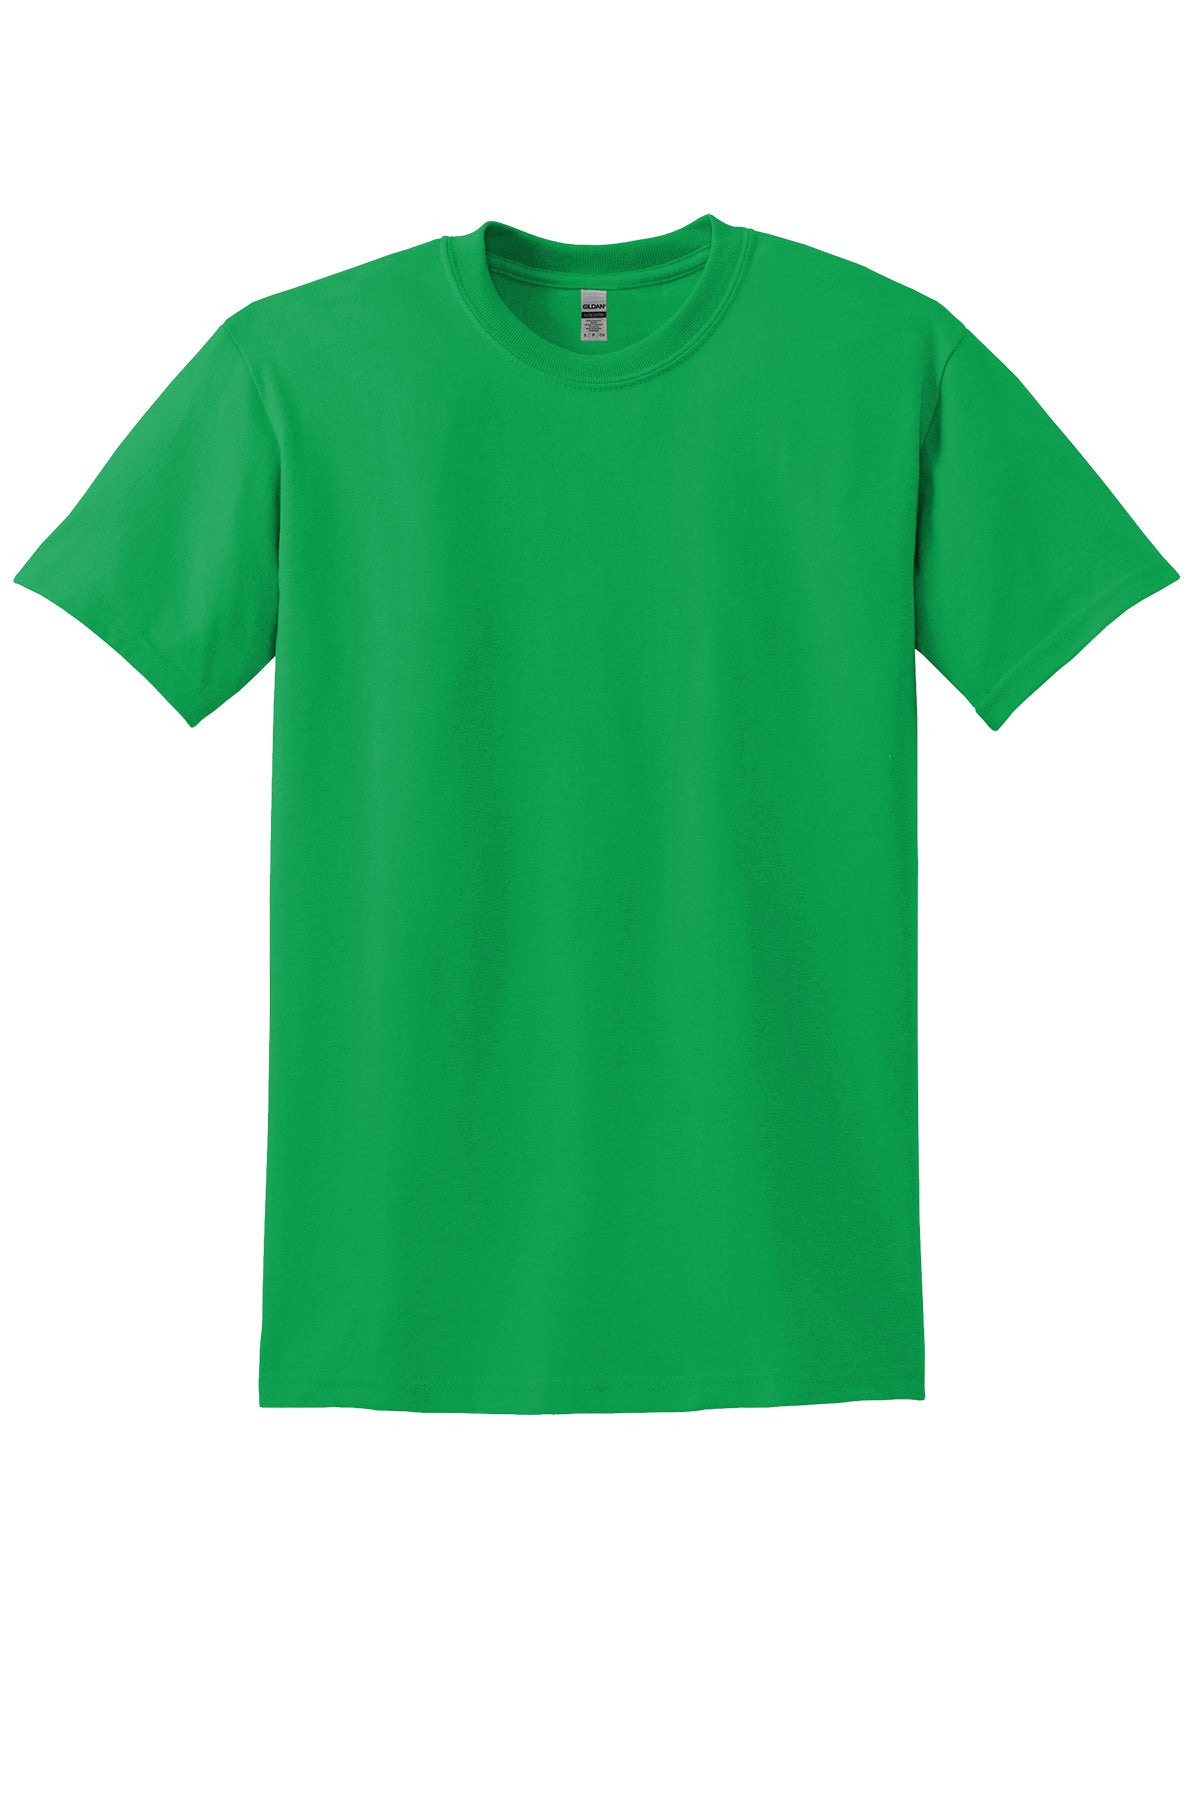 Gildan 8000 Adult T-Shirt Ad Small / Irish Green